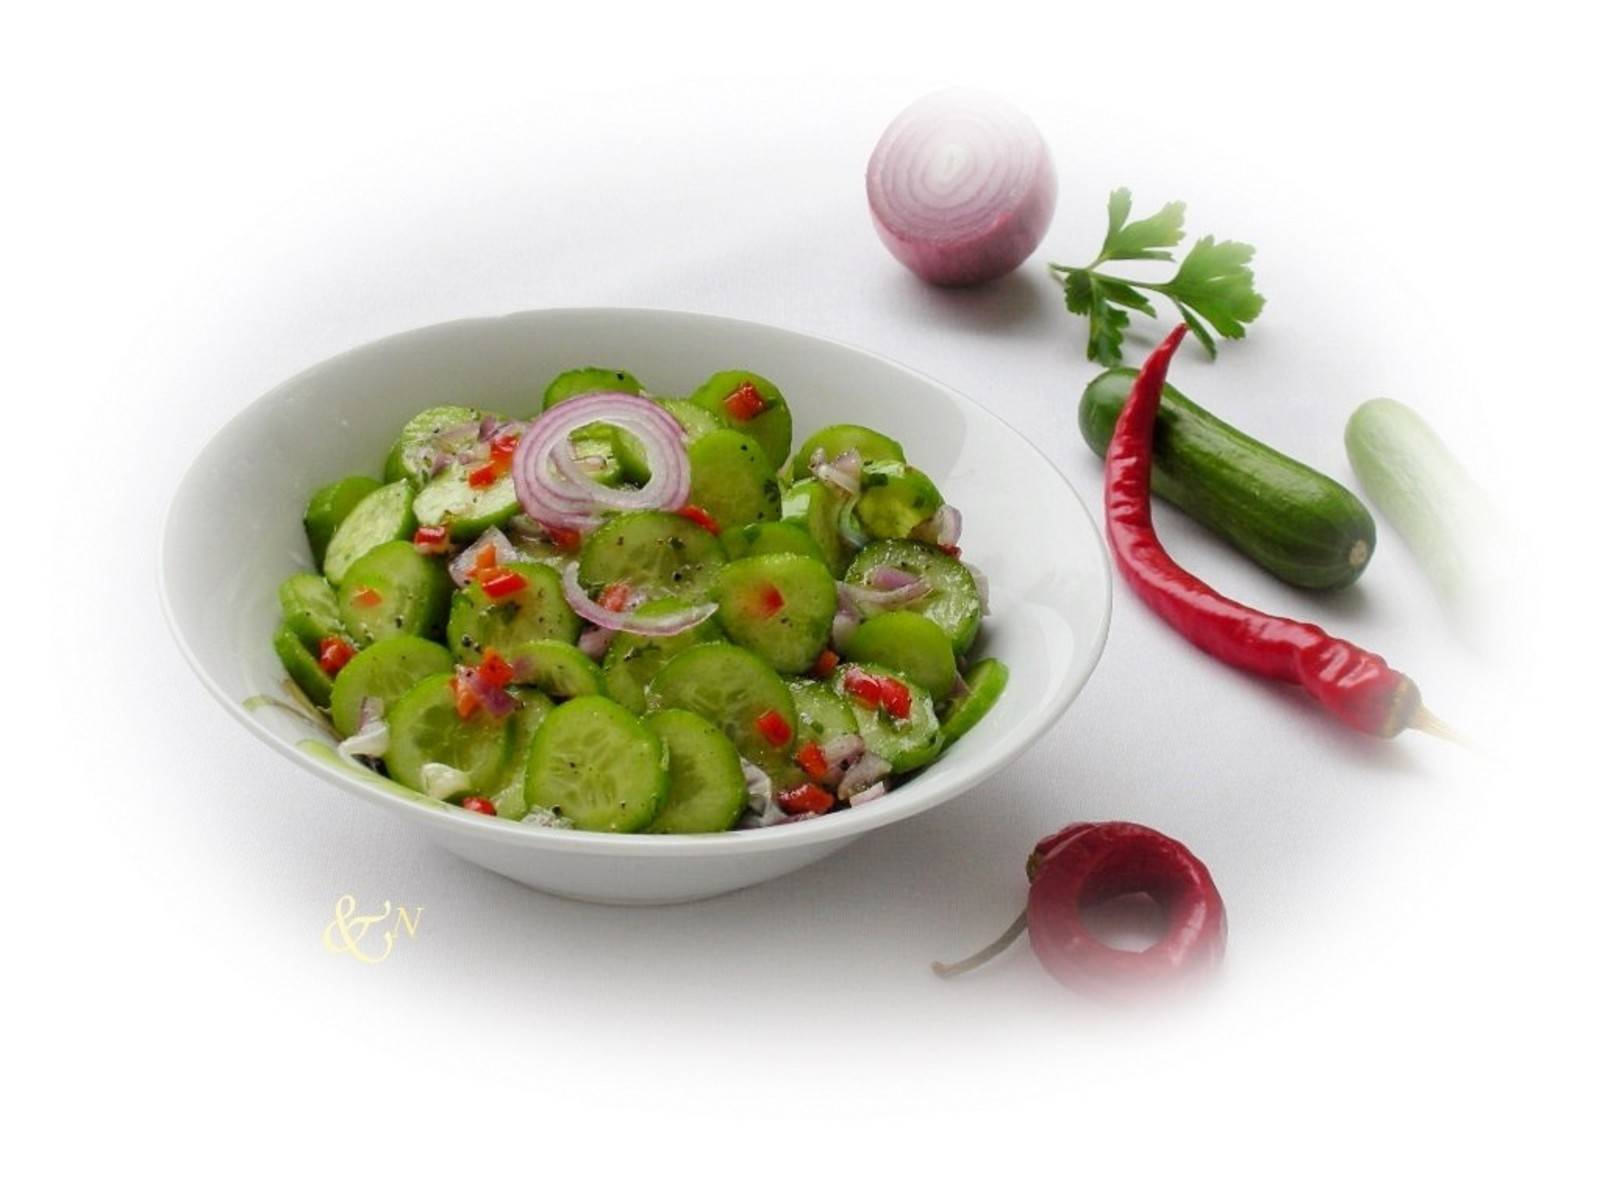 Thailändischer Chili-Gurken-Salat